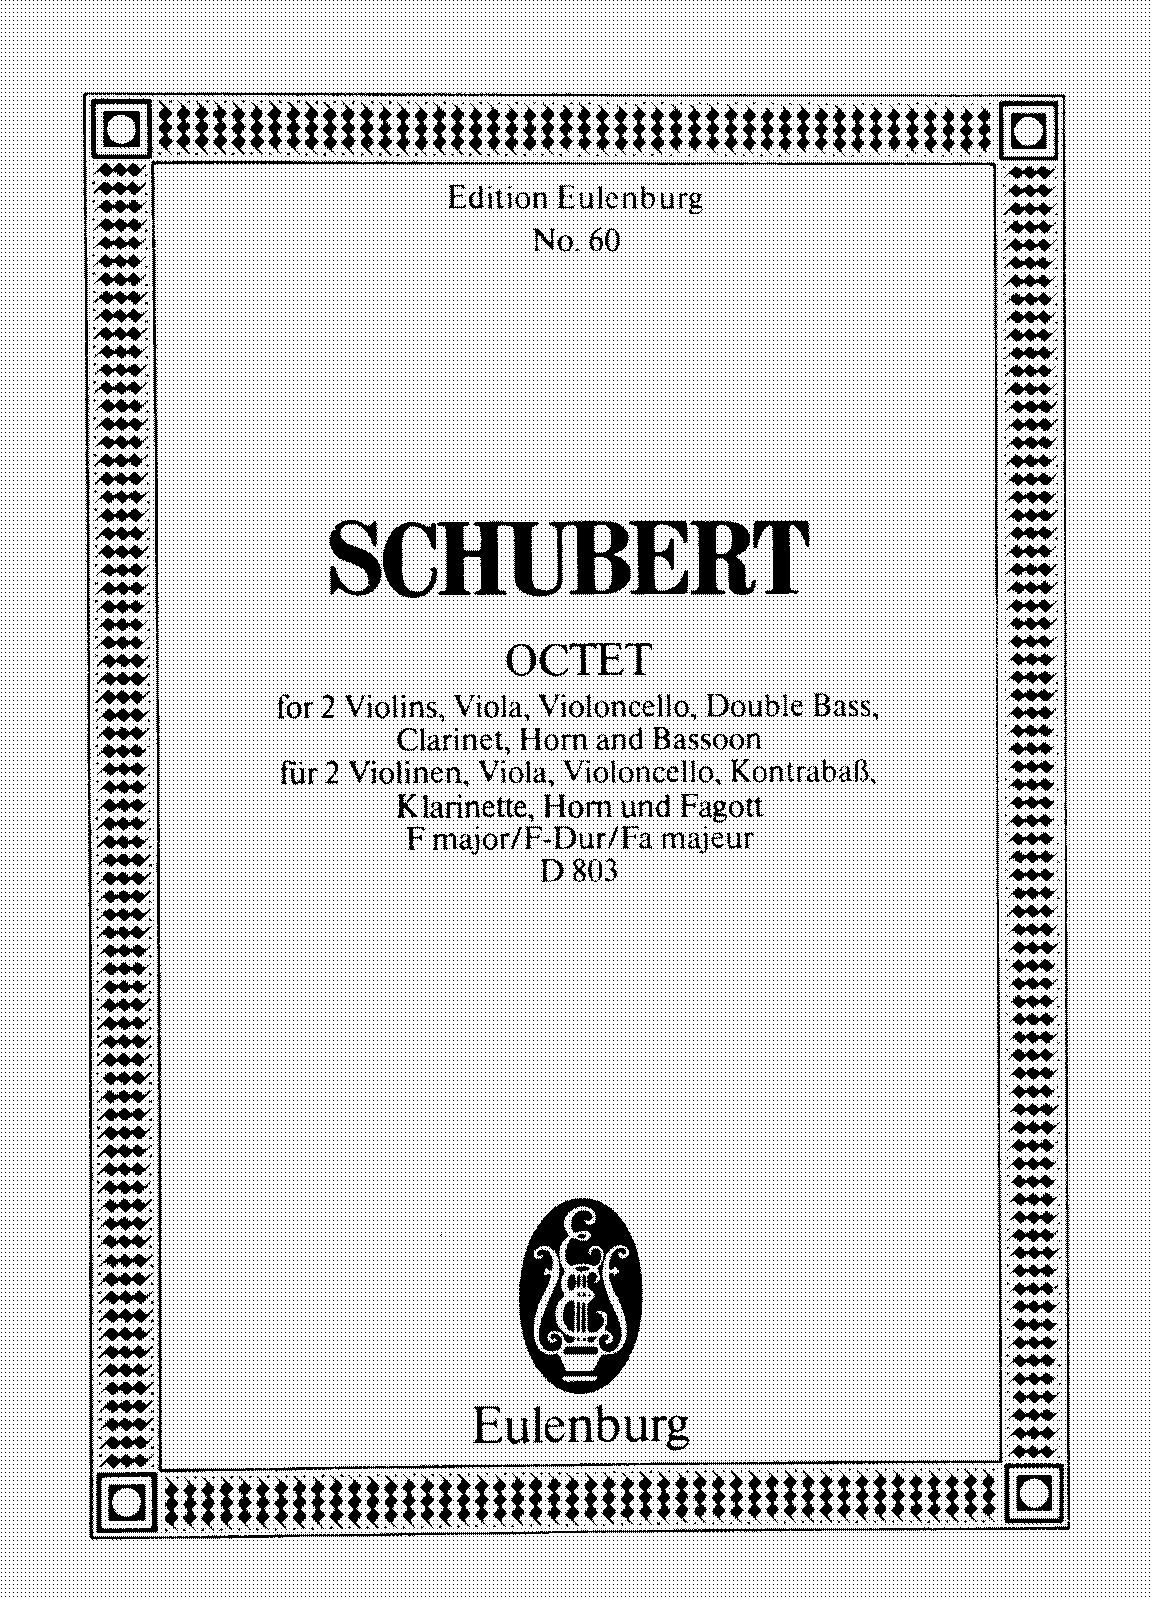 Octet in F major, D.803 (Schubert, Franz) - IMSLP: Free Sheet Music PDF Download1120 x 1600